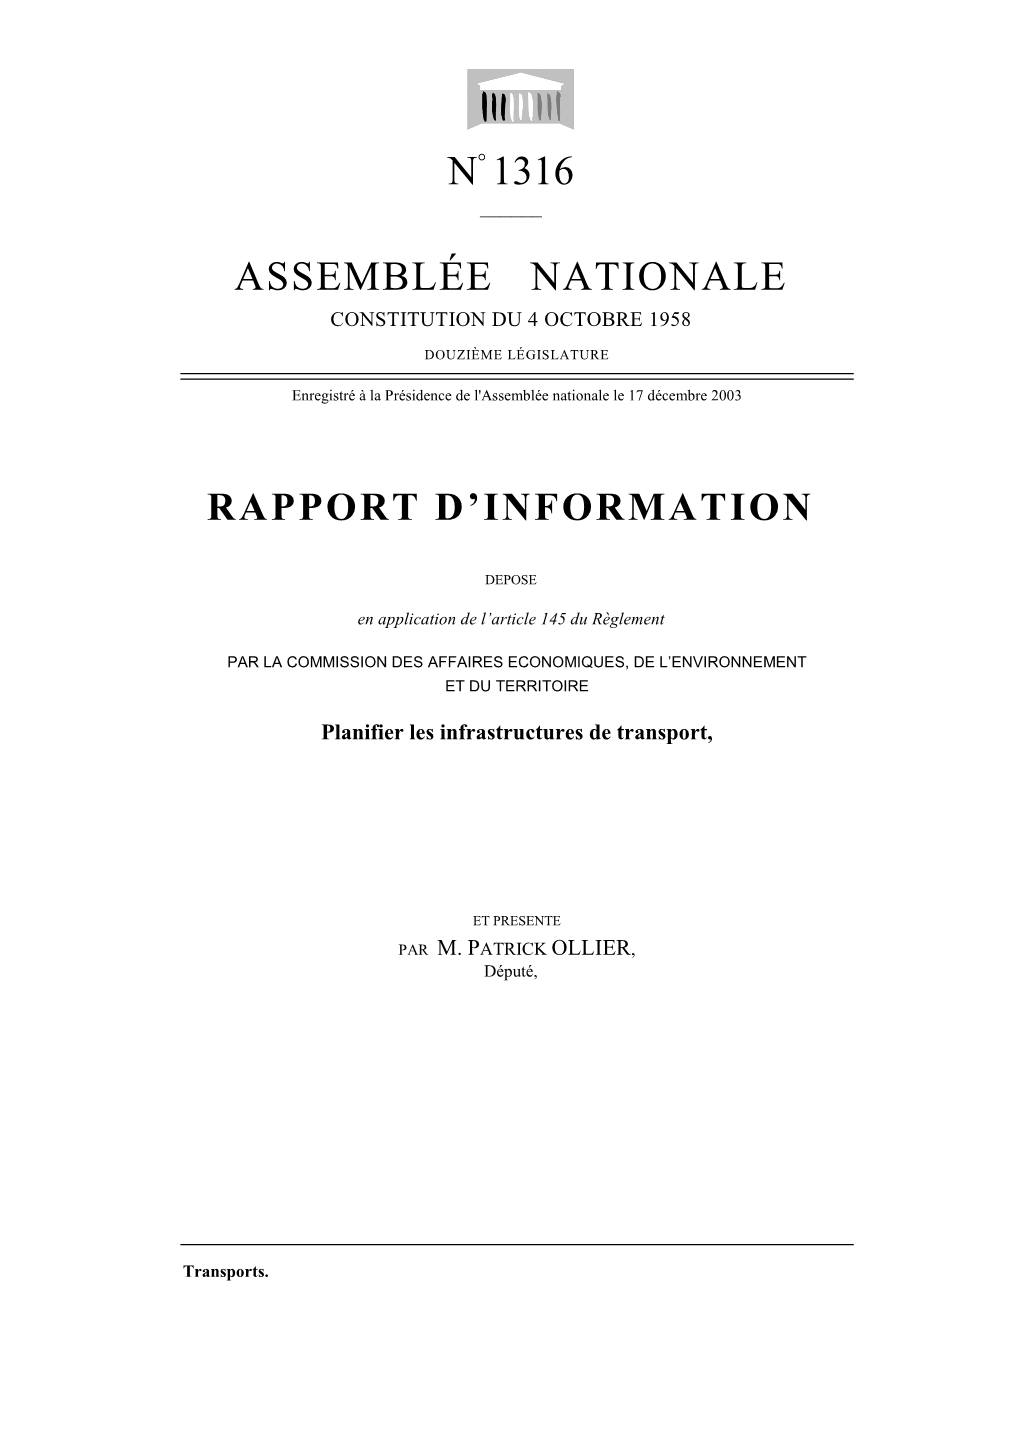 N° 1316 Assemblée Nationale